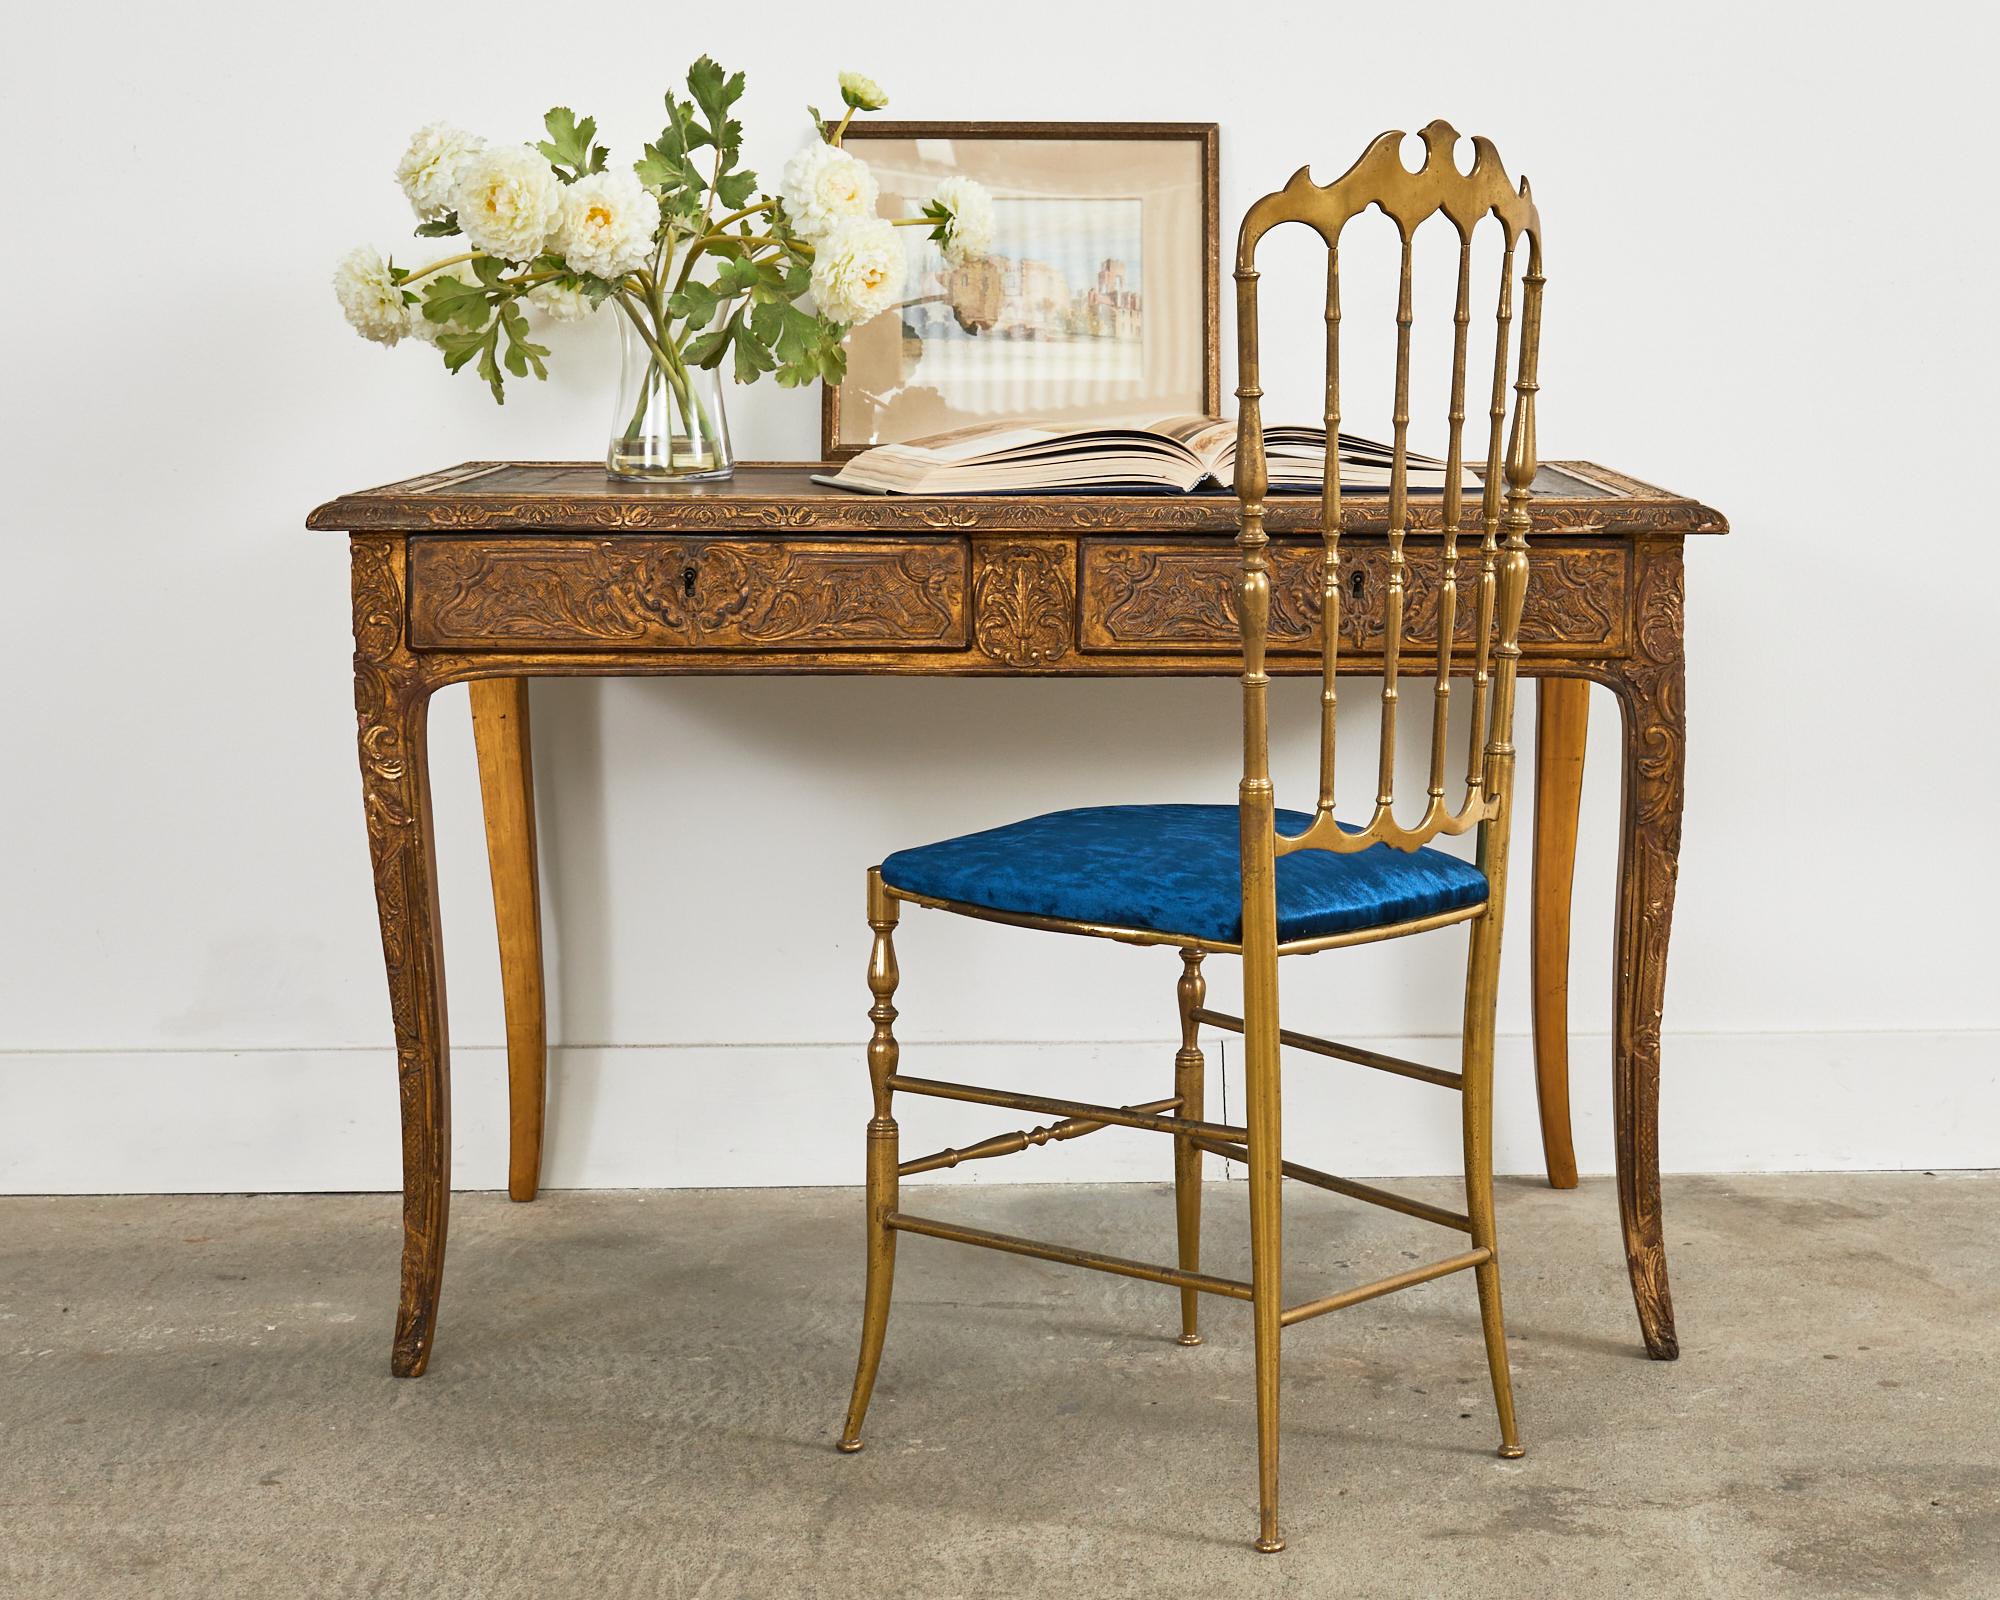 Opulente table à écrire, bureau, ou bureau plat français du 19ème siècle, fabriqué dans le grand goût Louis XV. Le cadre en bois de cette table extraordinaire est plaqué et sculpté de motifs complexes de fleurs, de feuillages et d'acanthes dans un